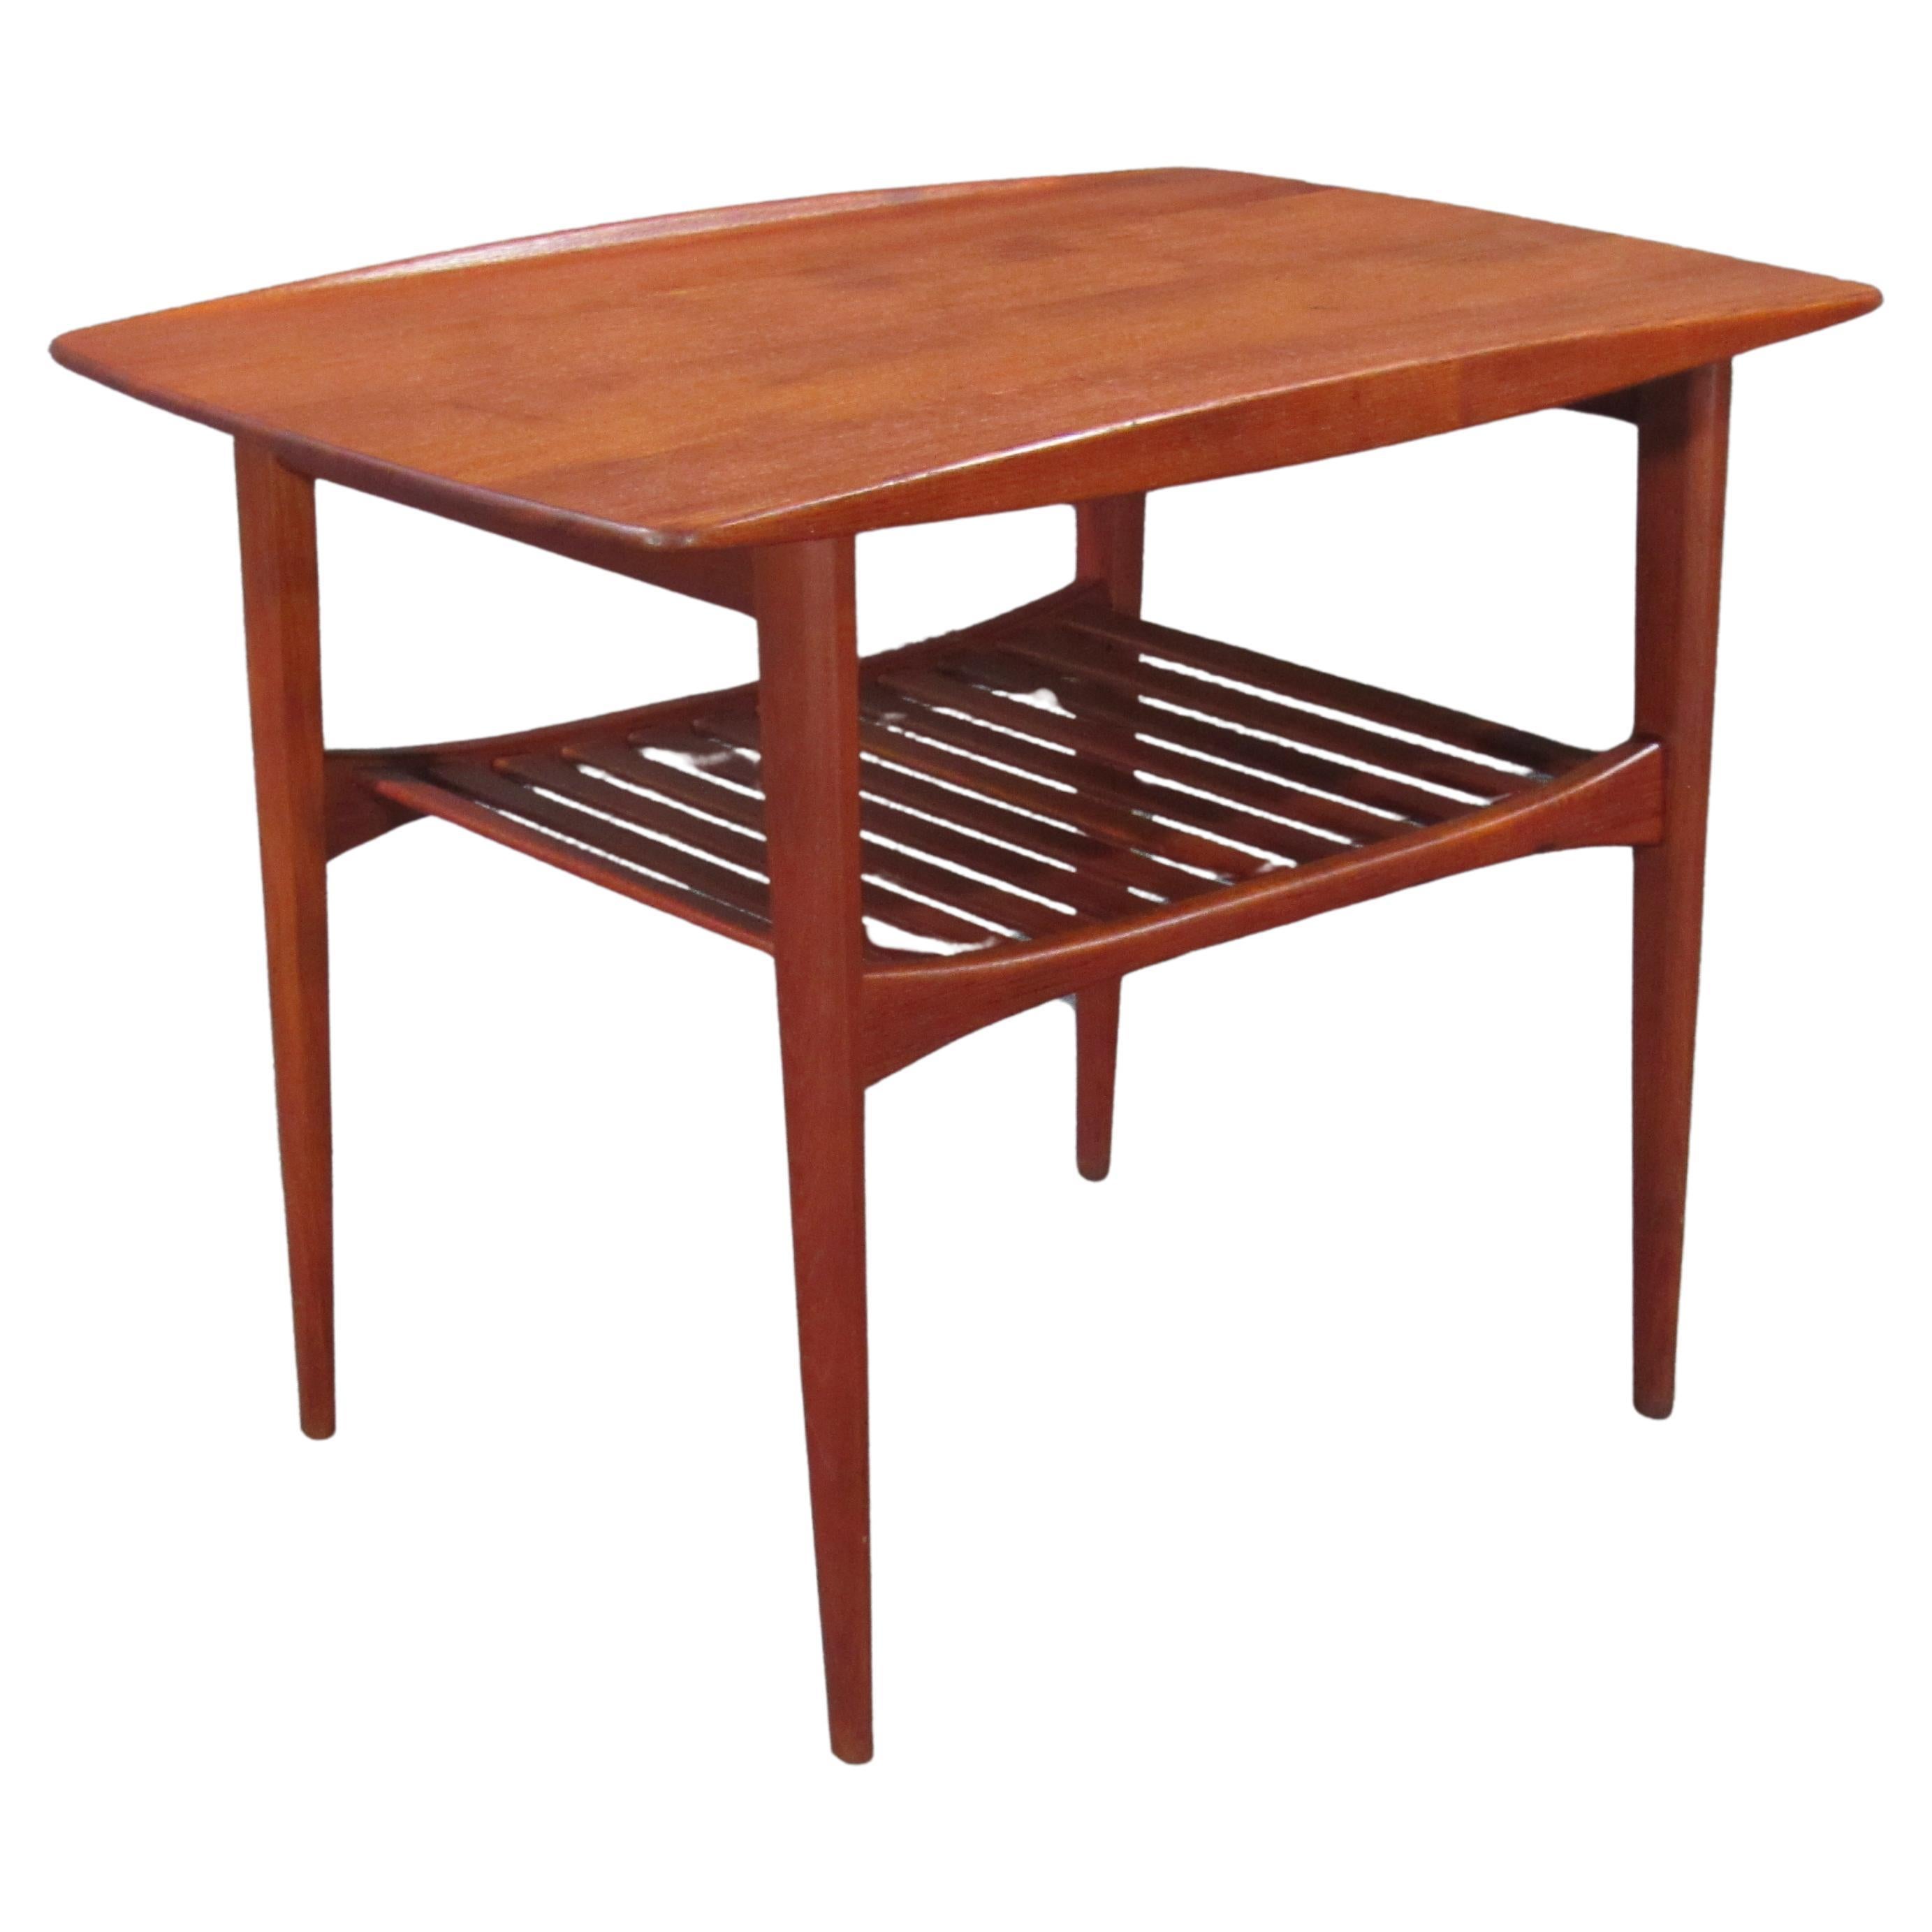 Danish Modern Early Finn Juhl Teak Table for France and Daverkosen, 1950s For Sale